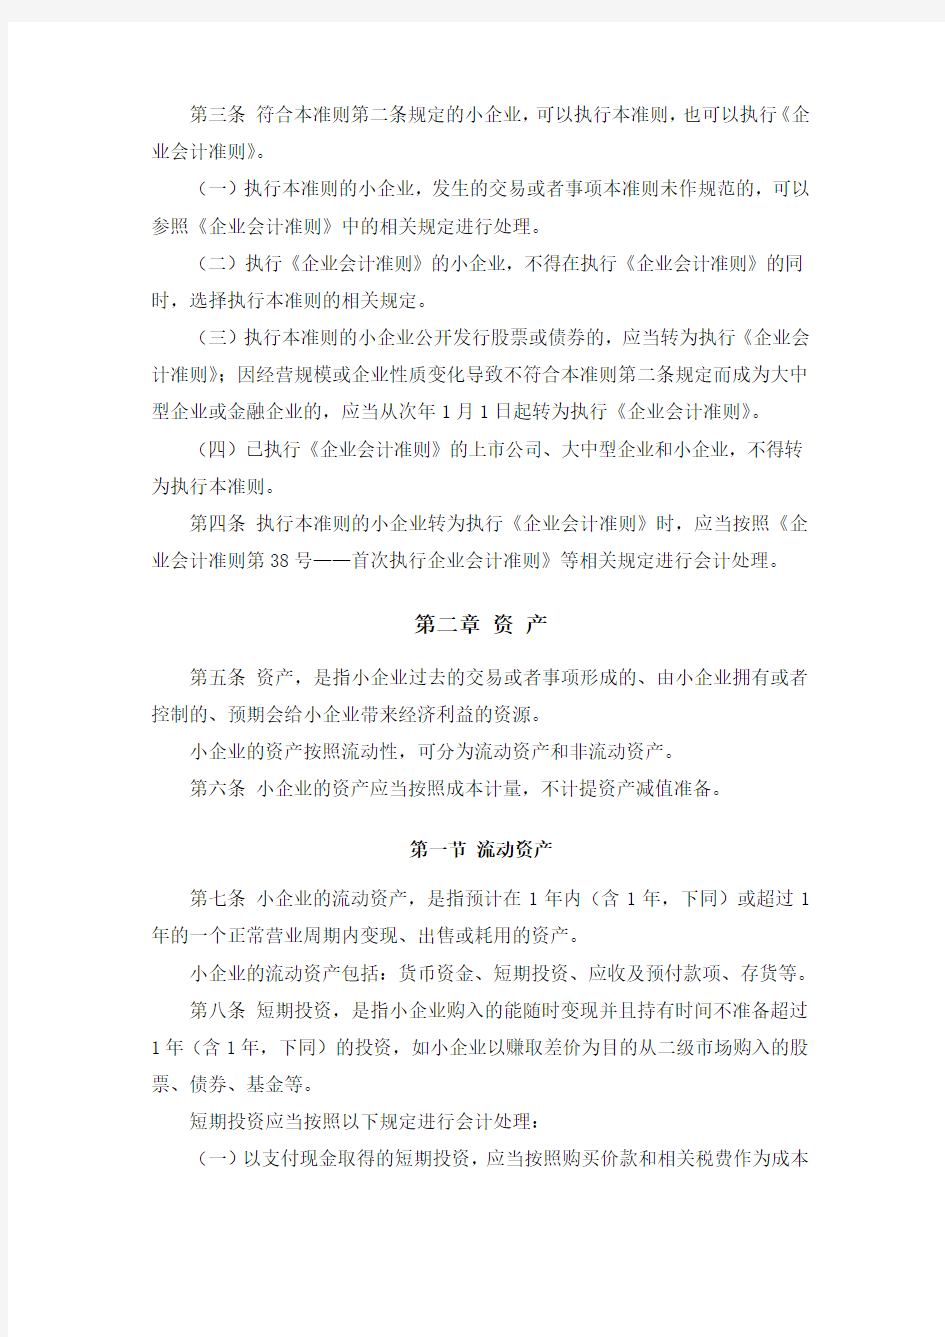 完整word版,完整版《小企业会计准则》(财会[2011]17号)